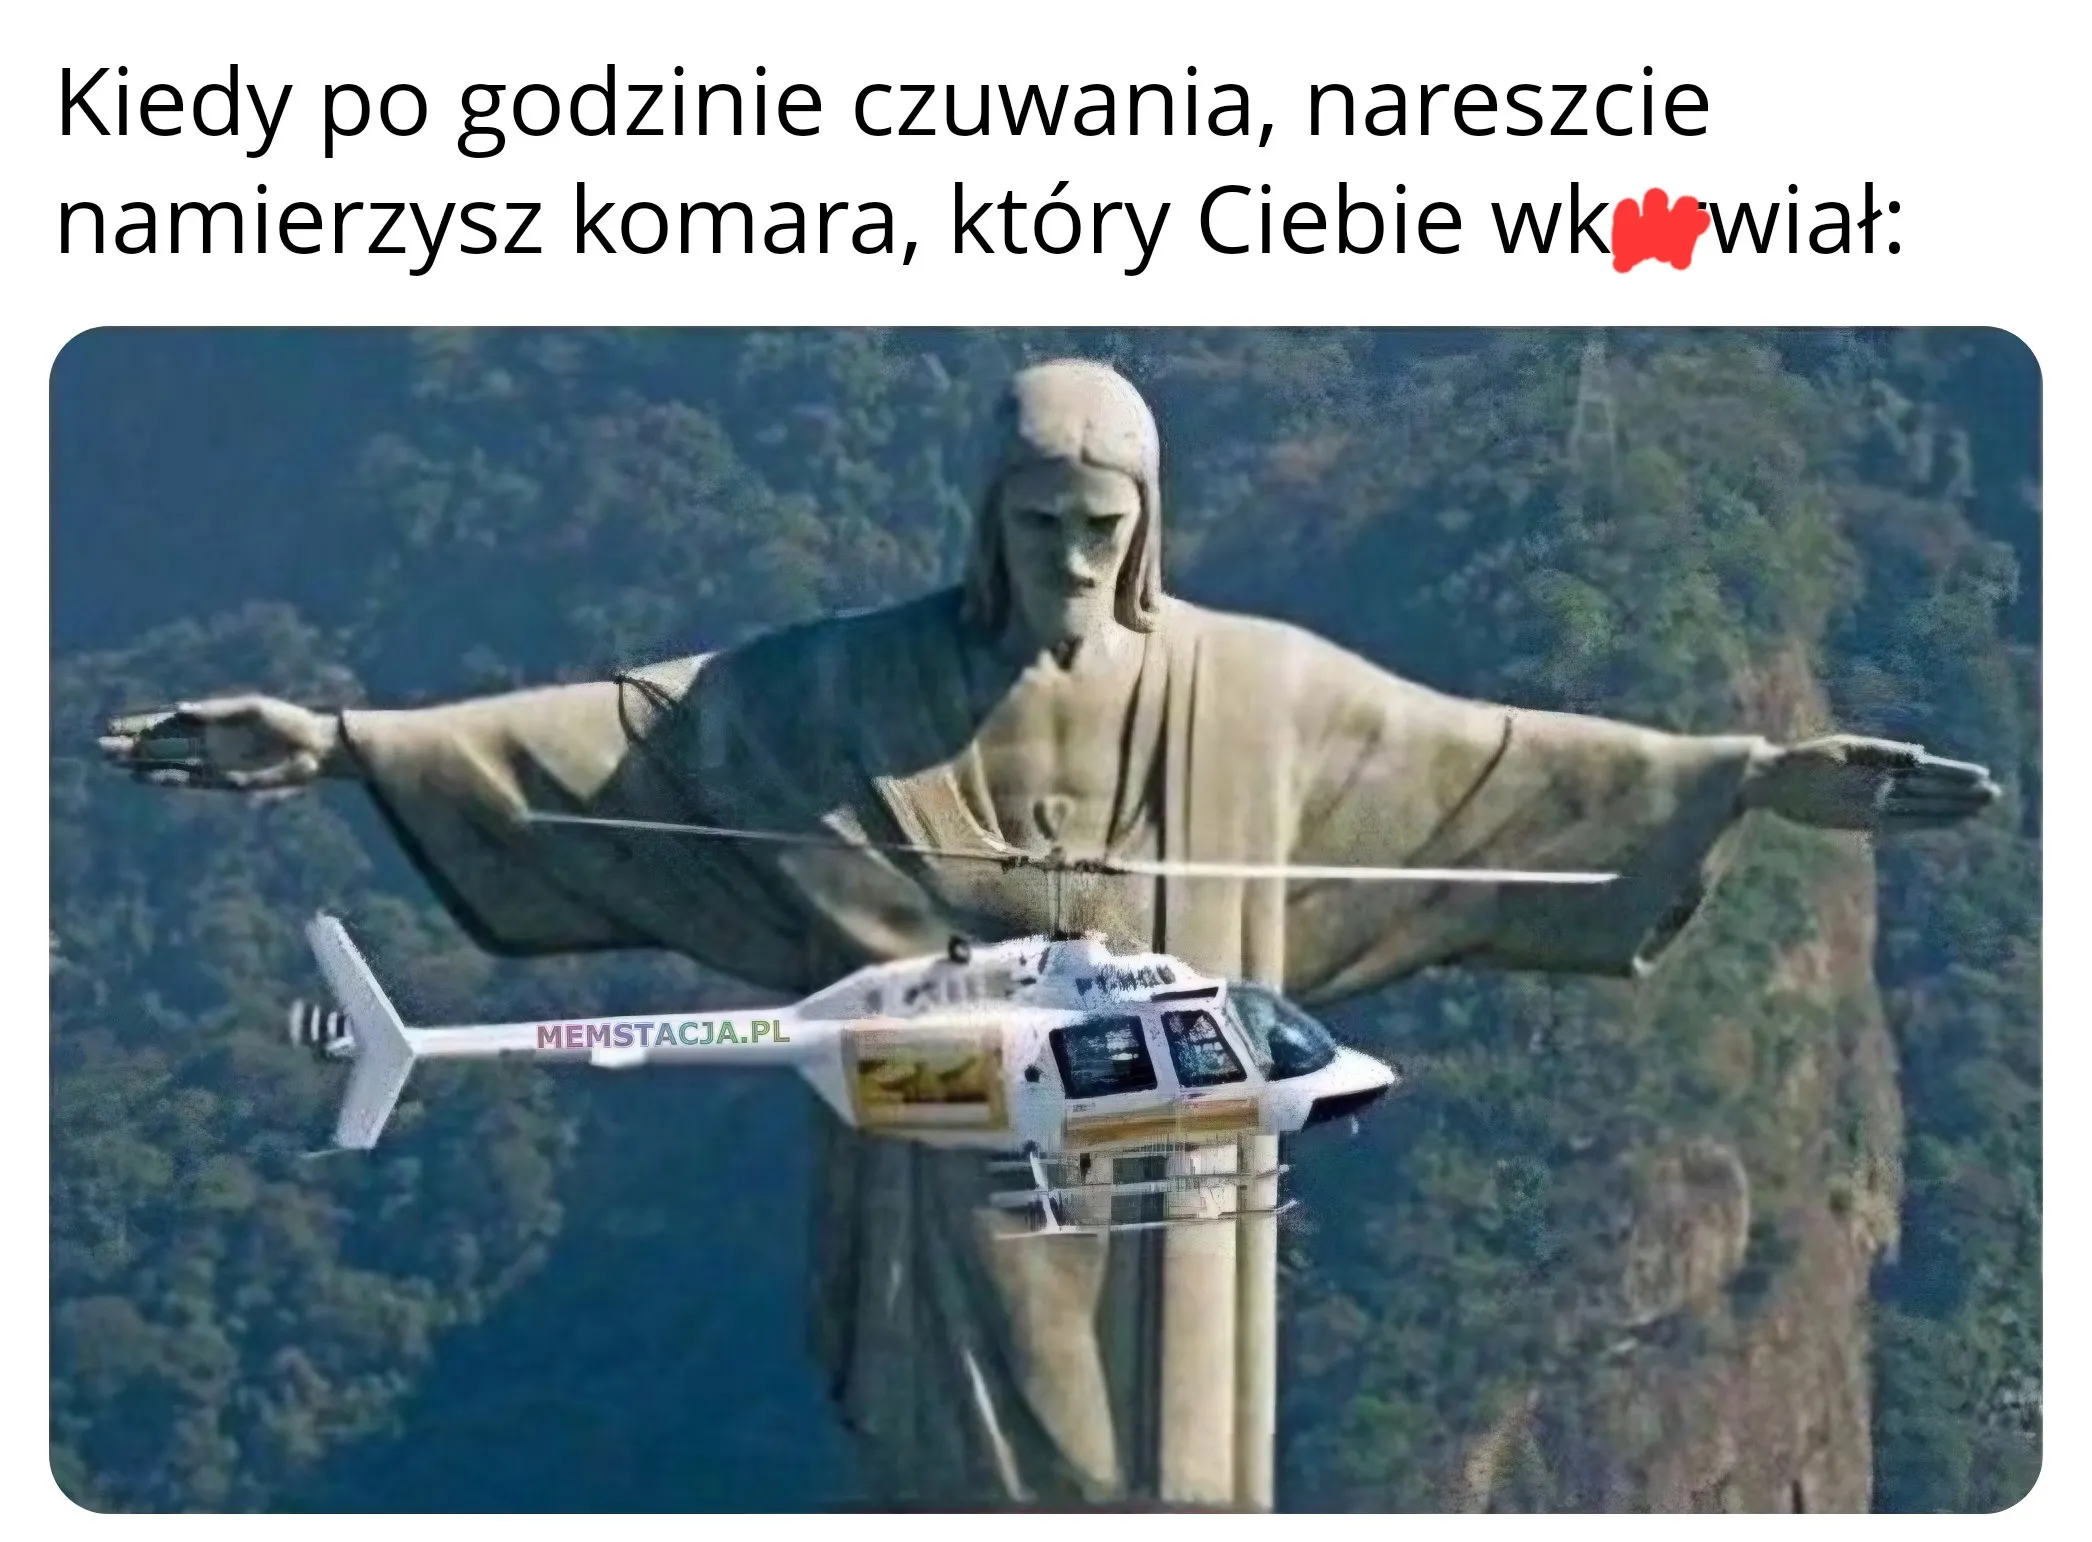 Kiedy po godzinie czuwania, nareszcie namierzysz komara, który Ciebie wk*rwiał: Zdjęcie pomnika Jezusa z rozłożonymi rękami i pomiędzy nimi helikopter